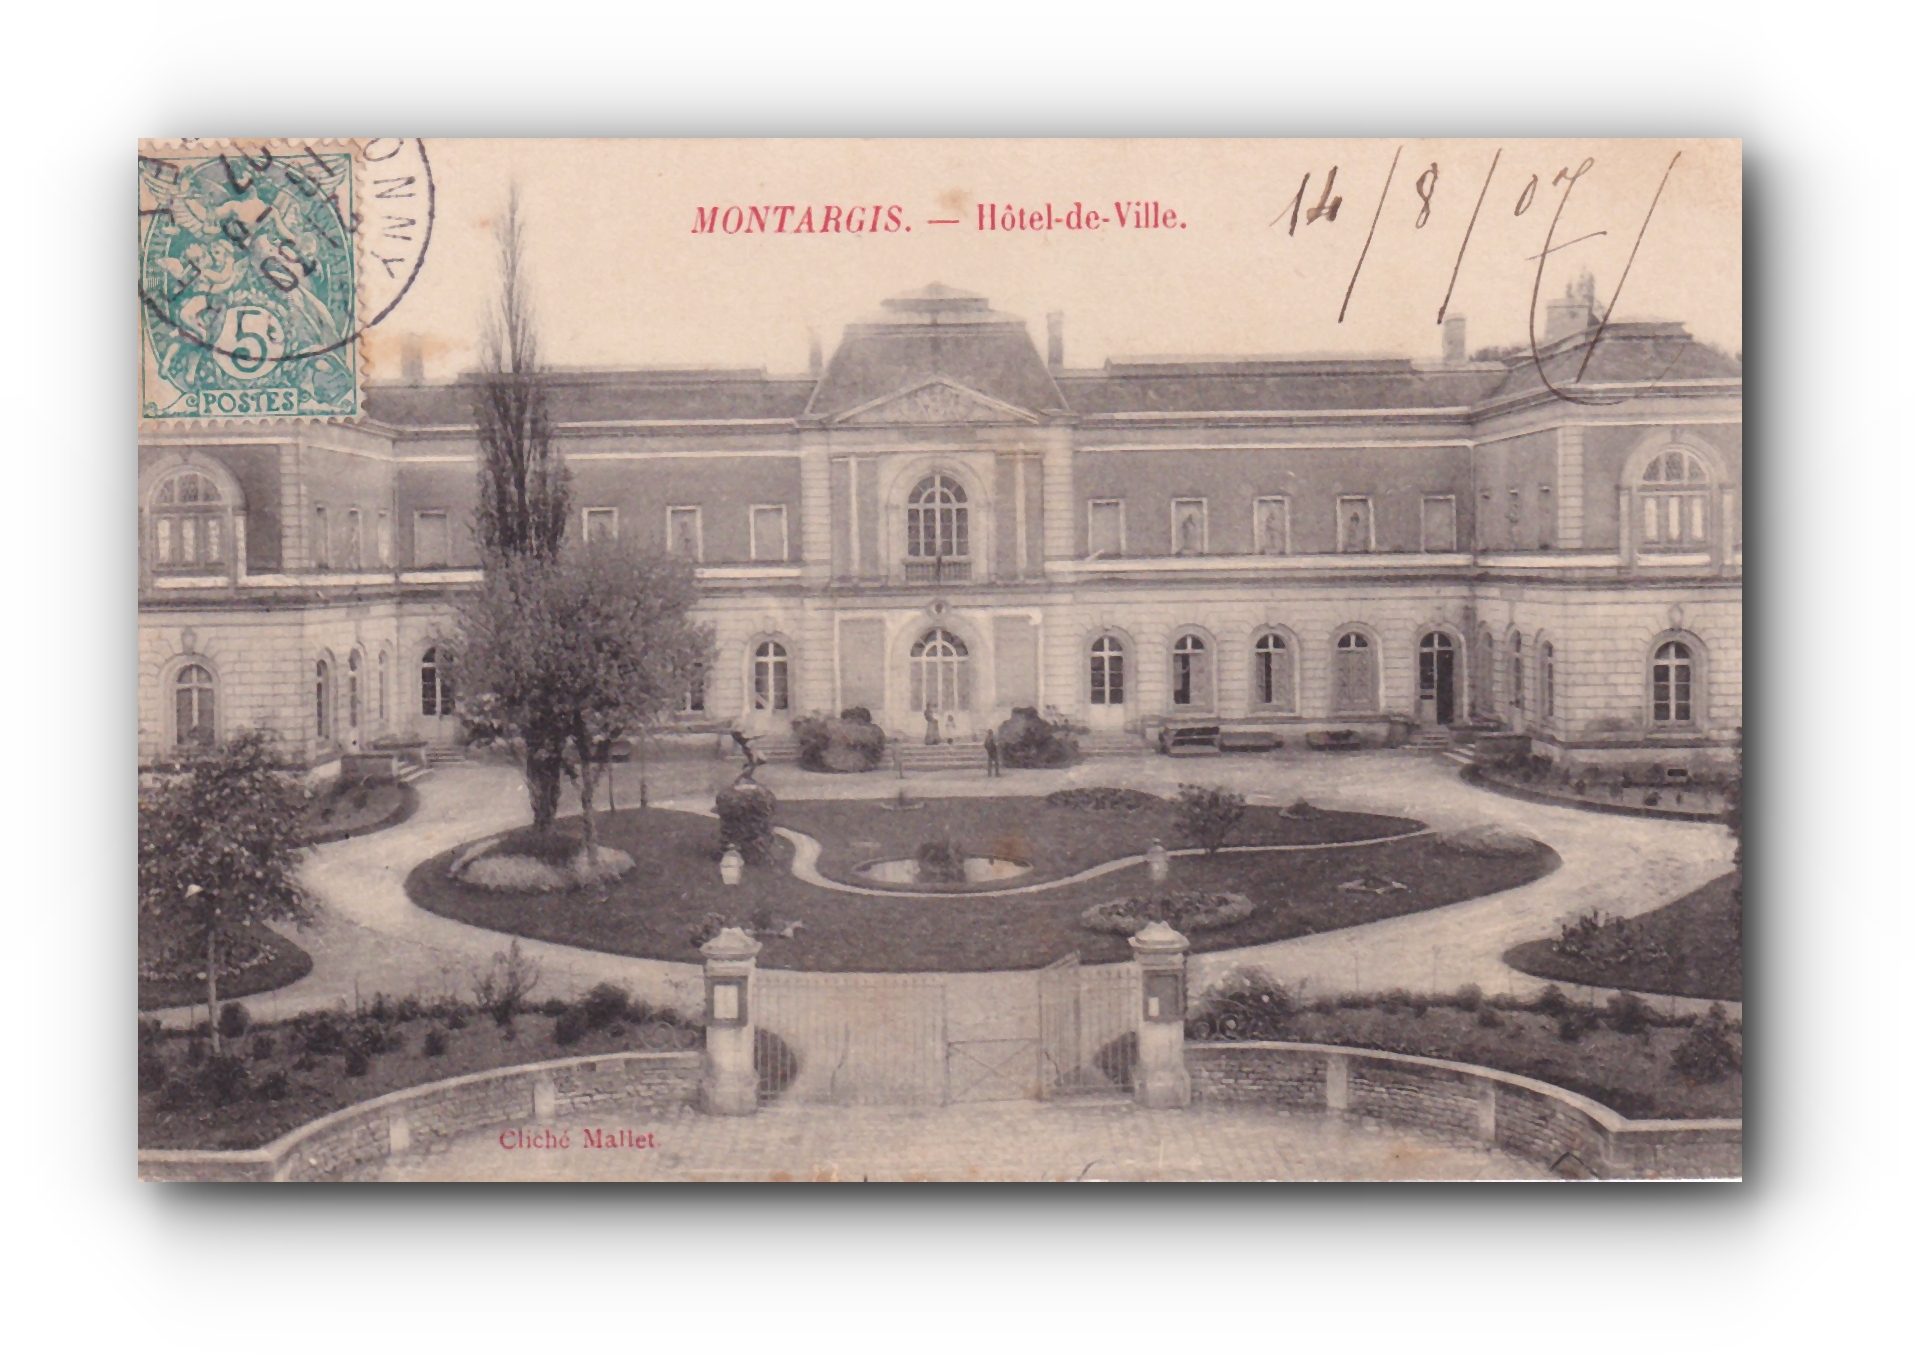 - Hôtel de Ville - MONTARGIS - 14.08.1907 -